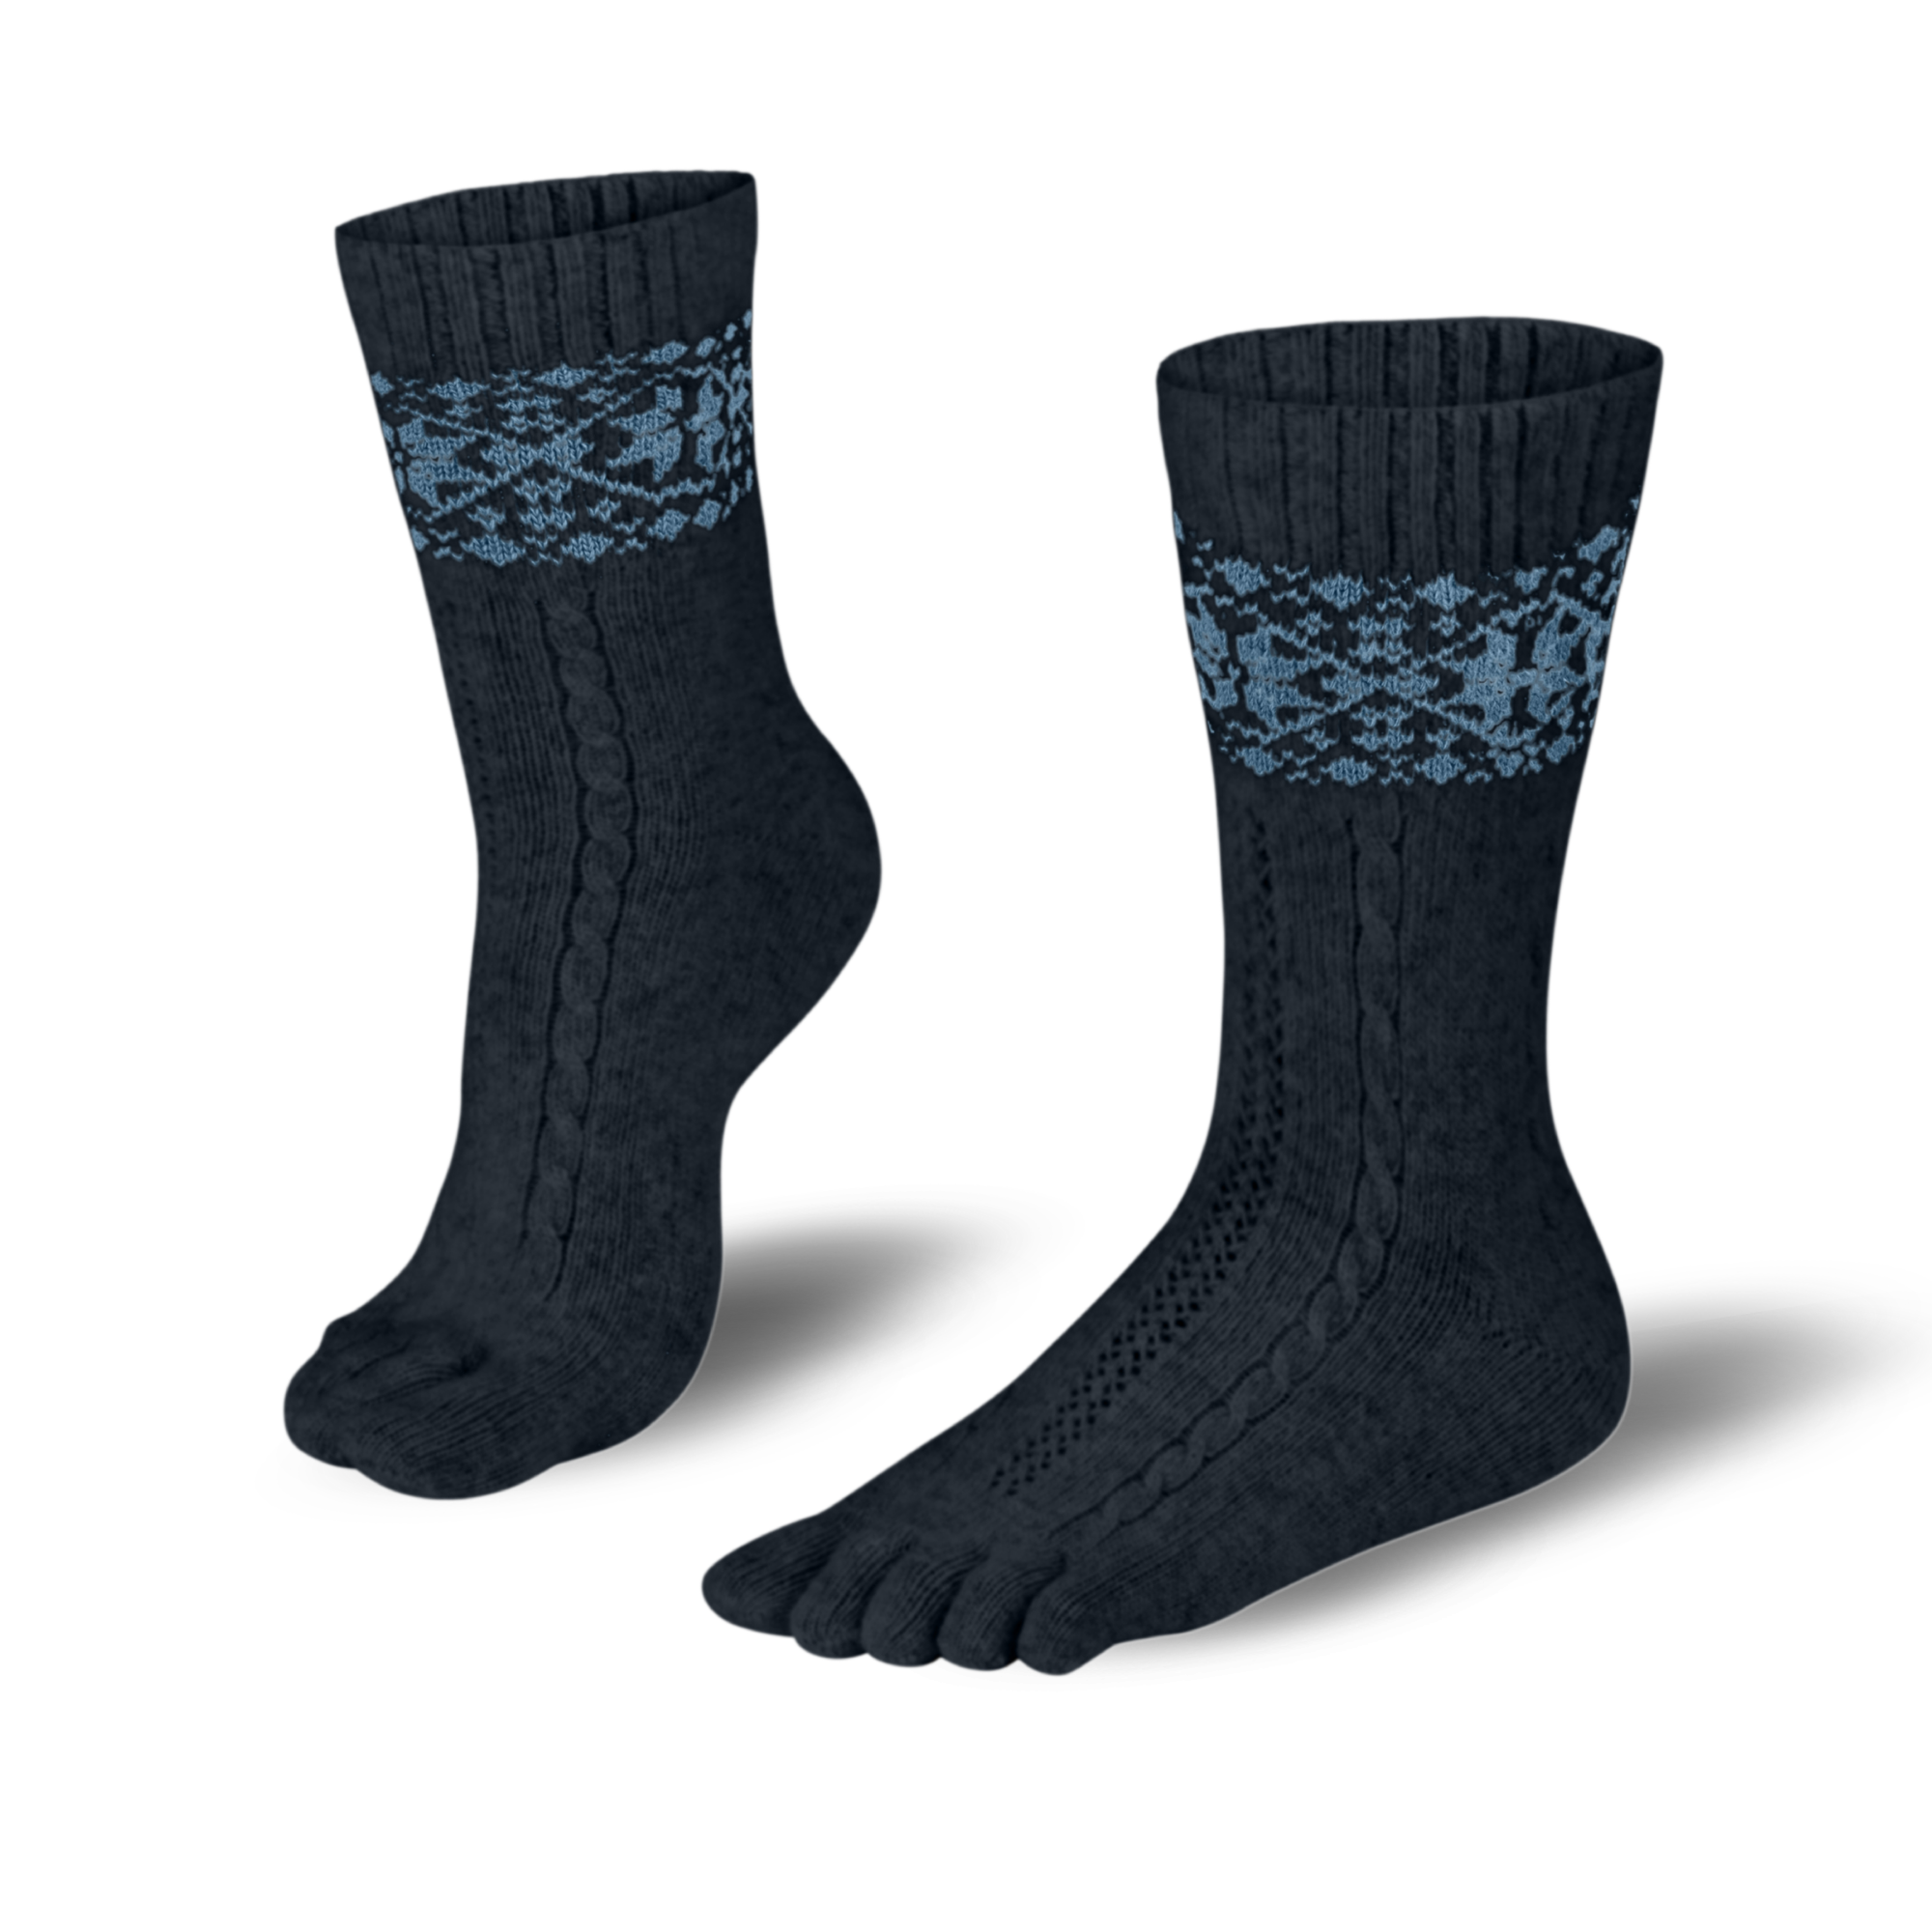 Knitido warme Zehensocken aus Merino & Kaschmir mit Schneeflecken Muster in anthrazit/blau 